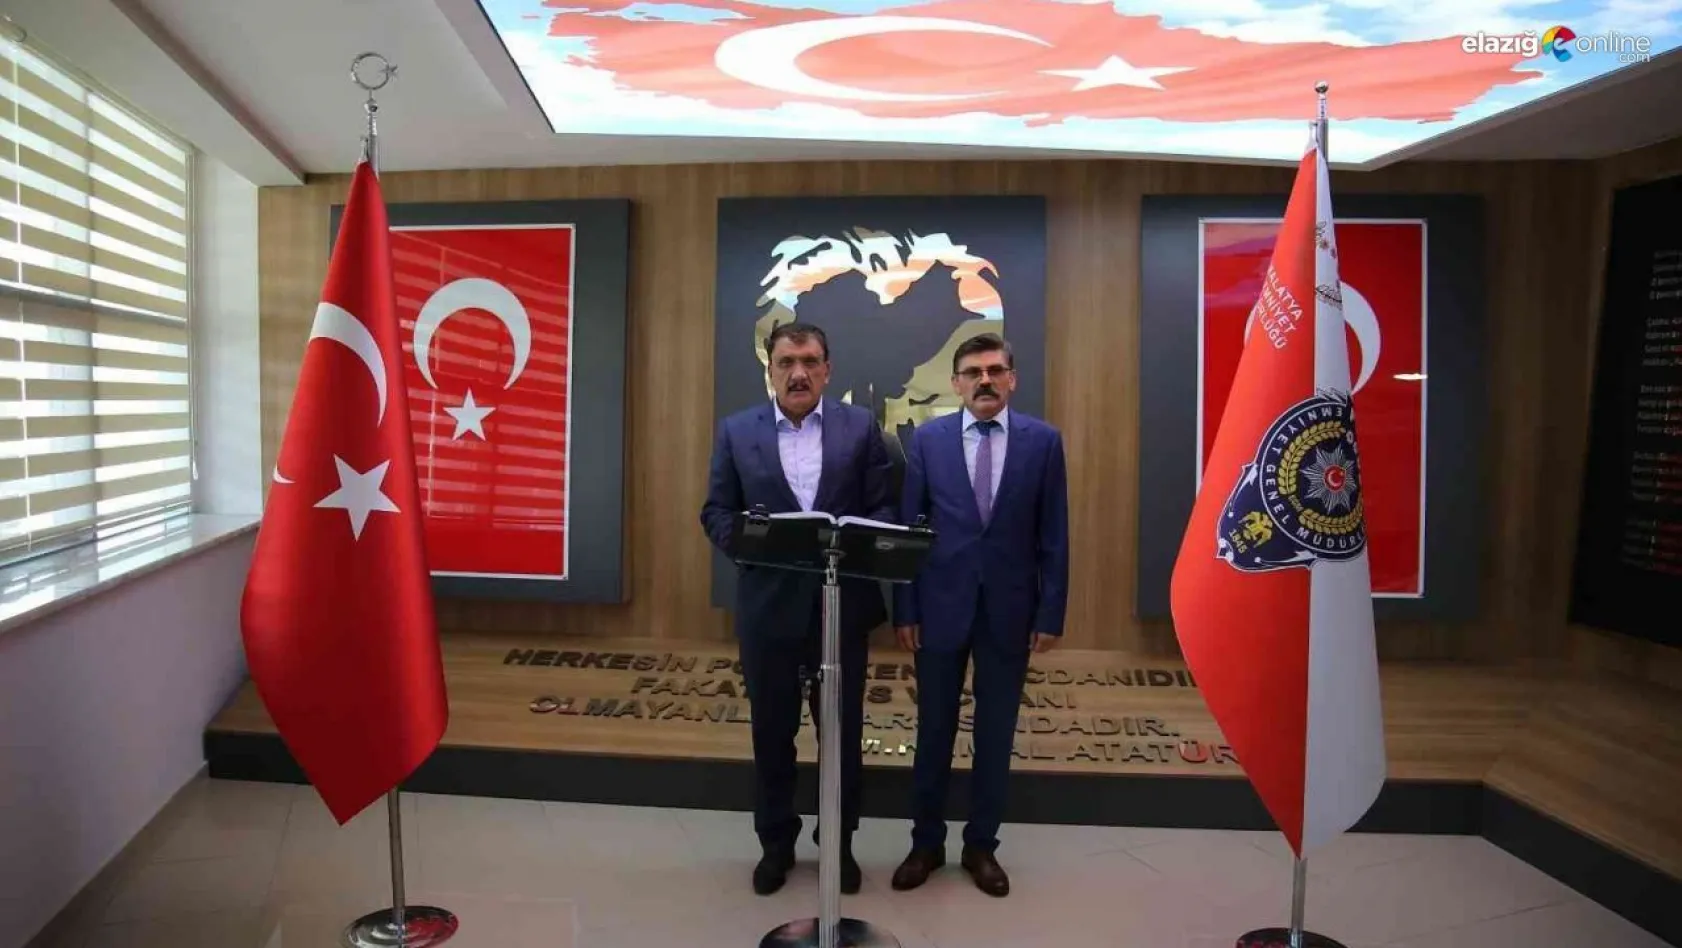 Başkan Gürkan'dan Dağdeviren'e övgü